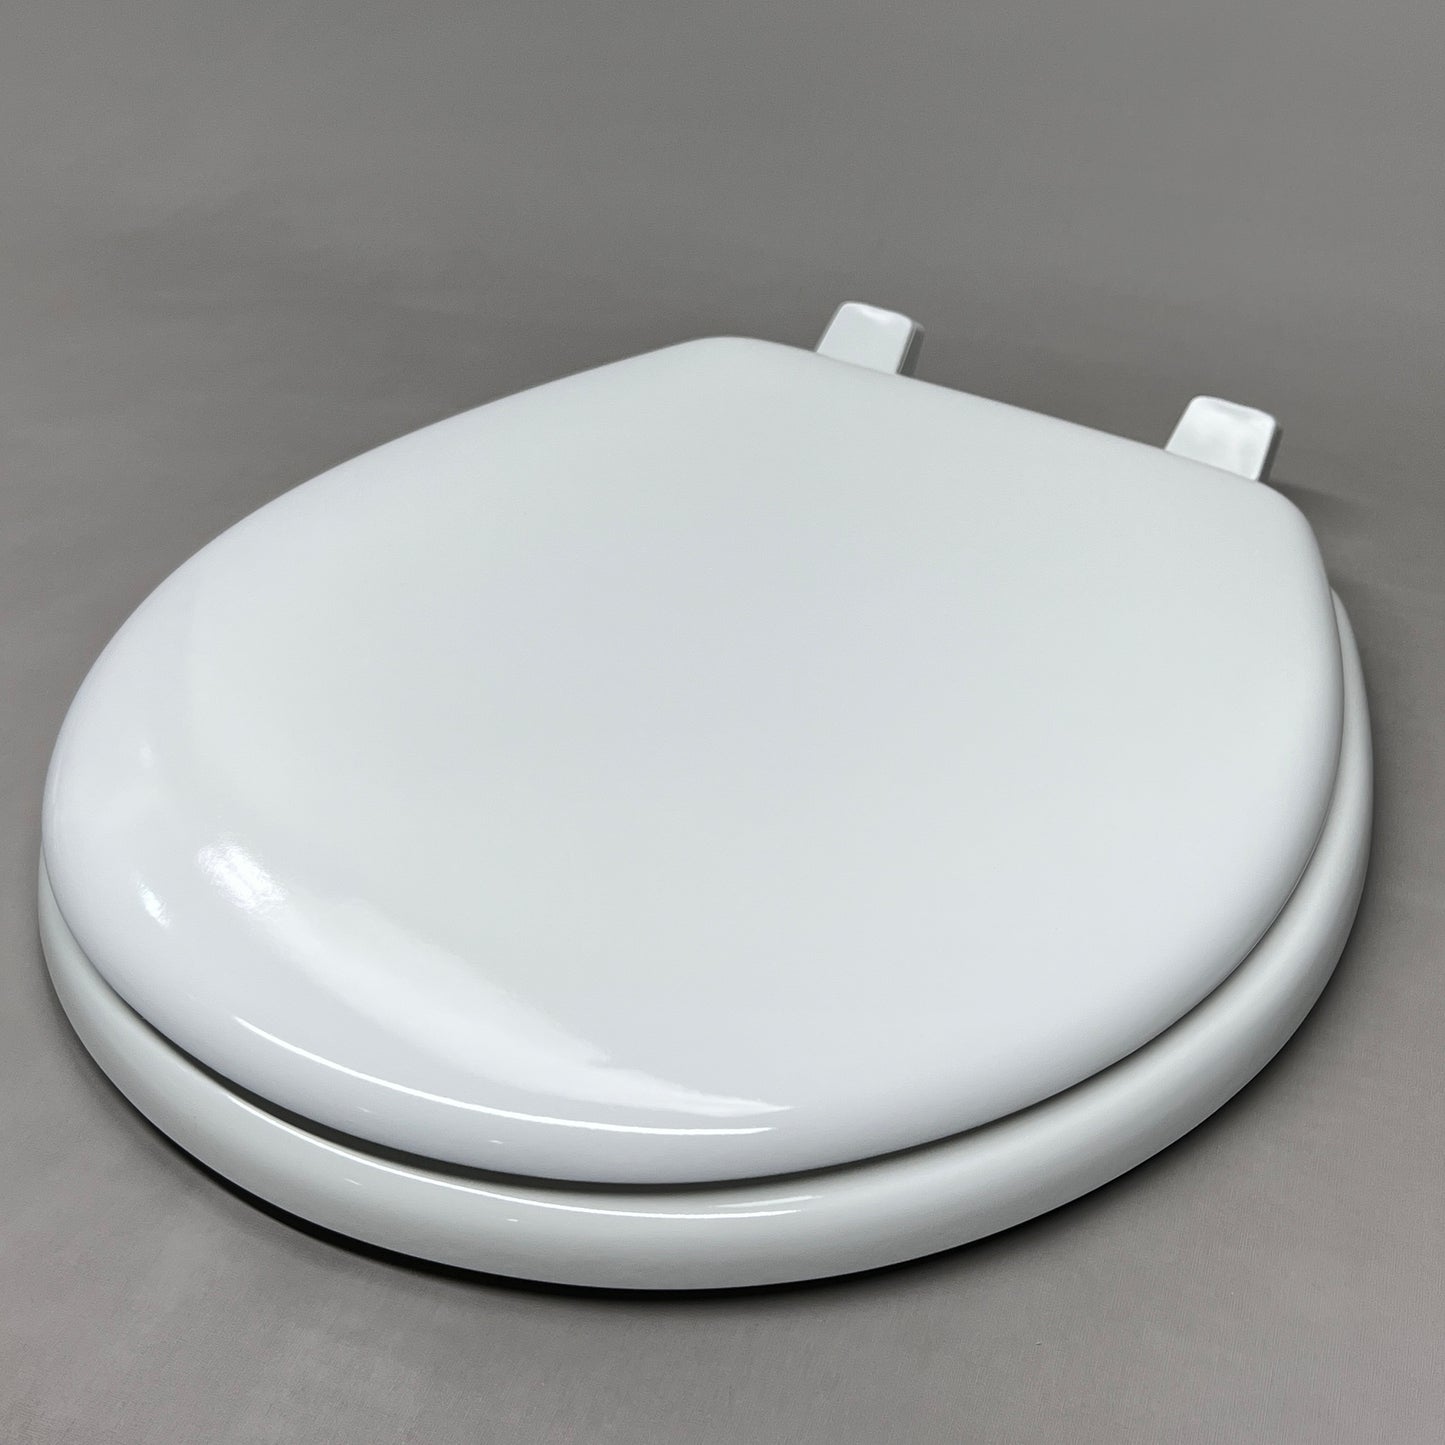 BENEKE Round Toilet Seat Enameled Molded Wood White XM30TM 000 (New)